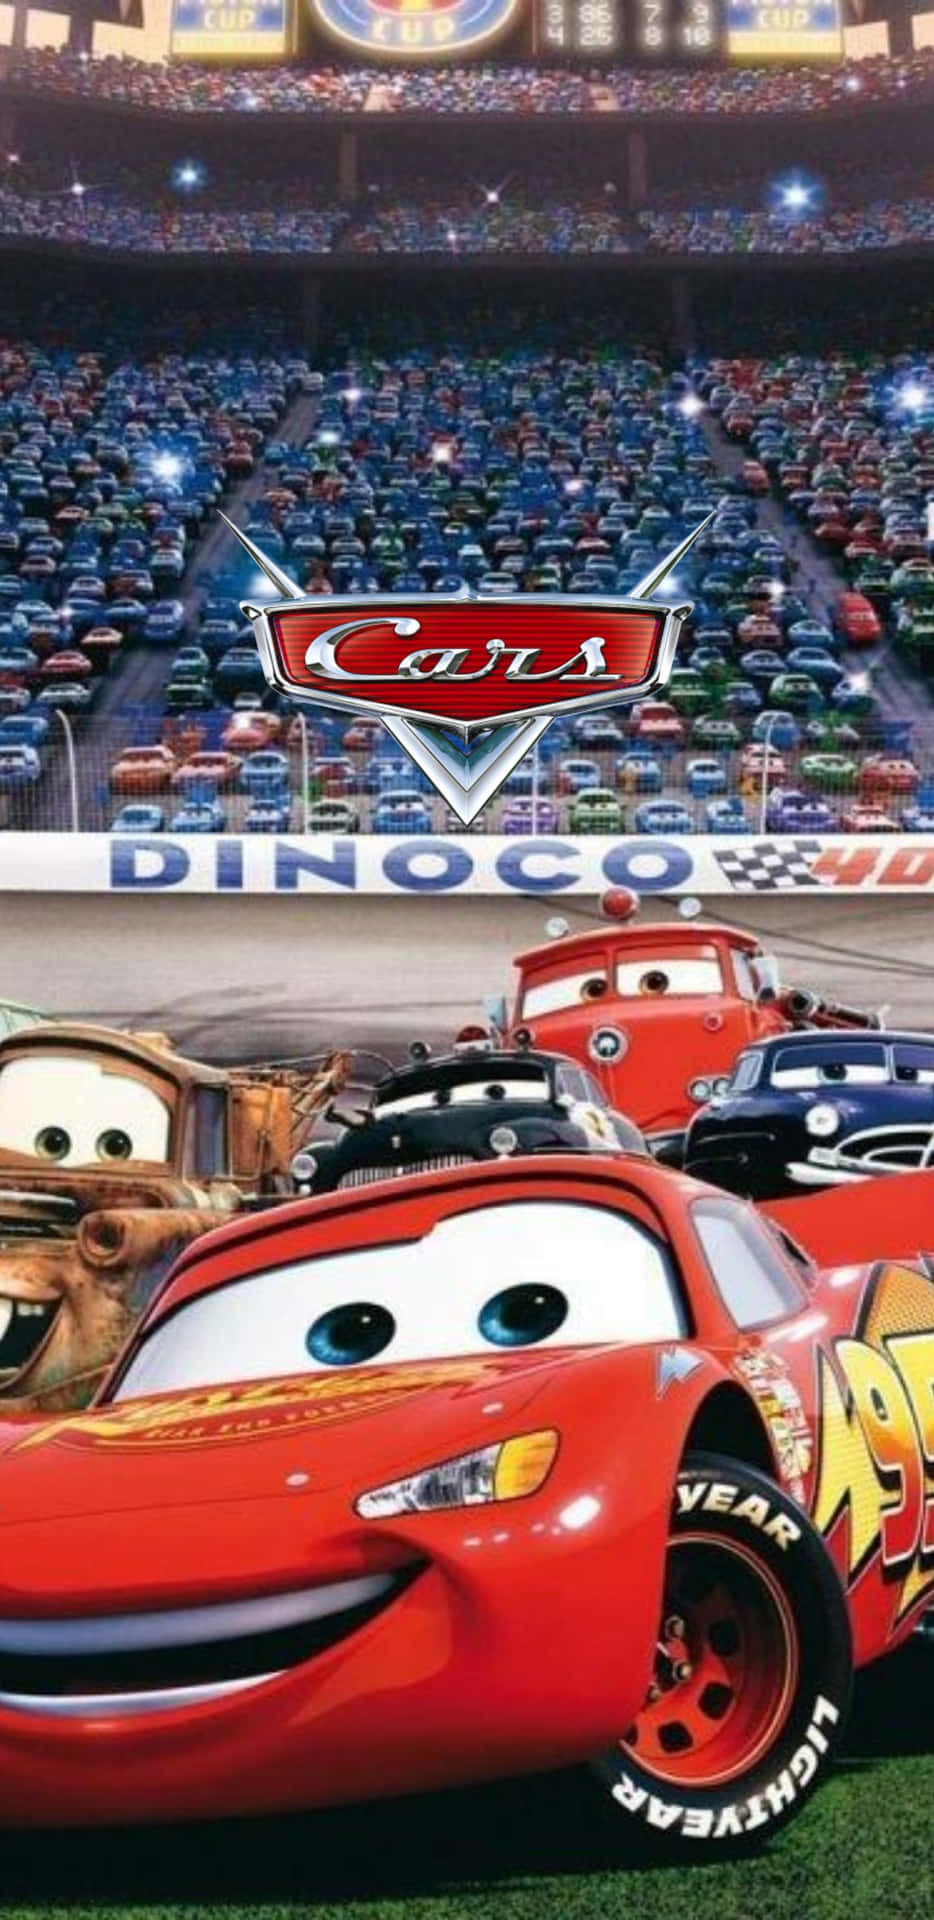 Disney Cars In A Stadium